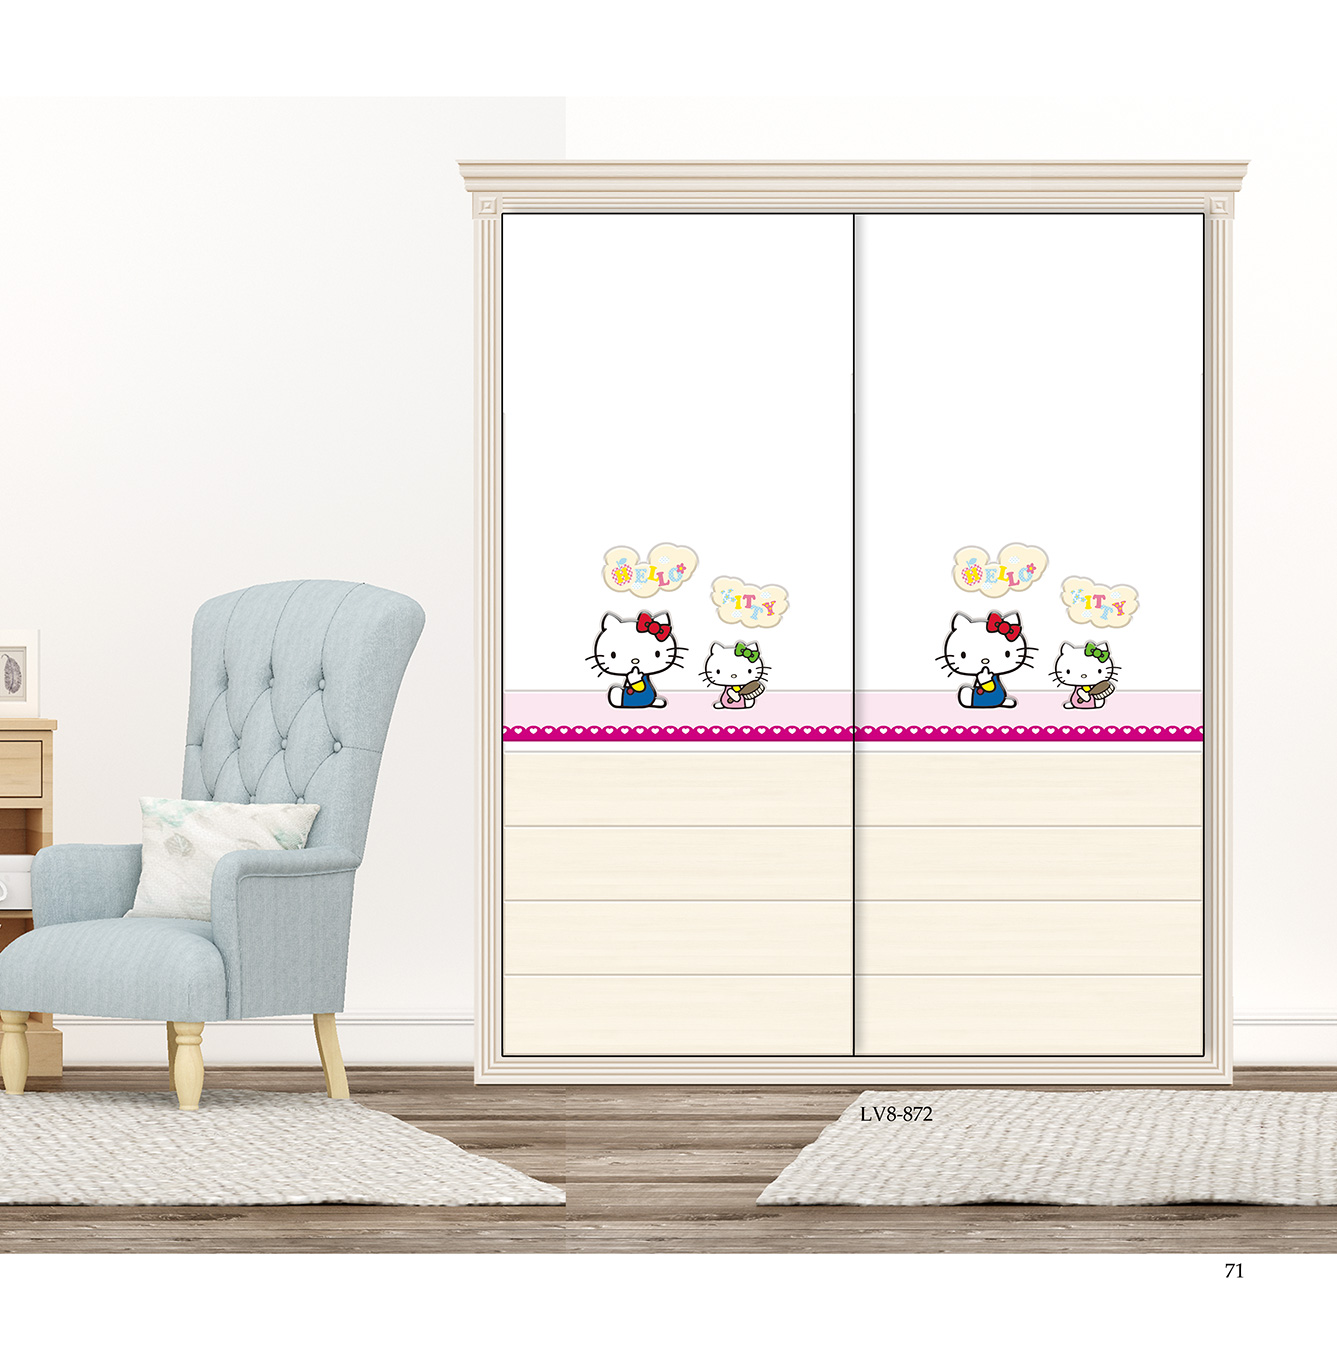  移门图 雕刻路径 橱柜门板  LV8-872 彩雕板,新款,UV打印 Hello Kitty， 猫咪，卡通 爱心， KT猫 ，花 ，星星， 蝴蝶结 粉色